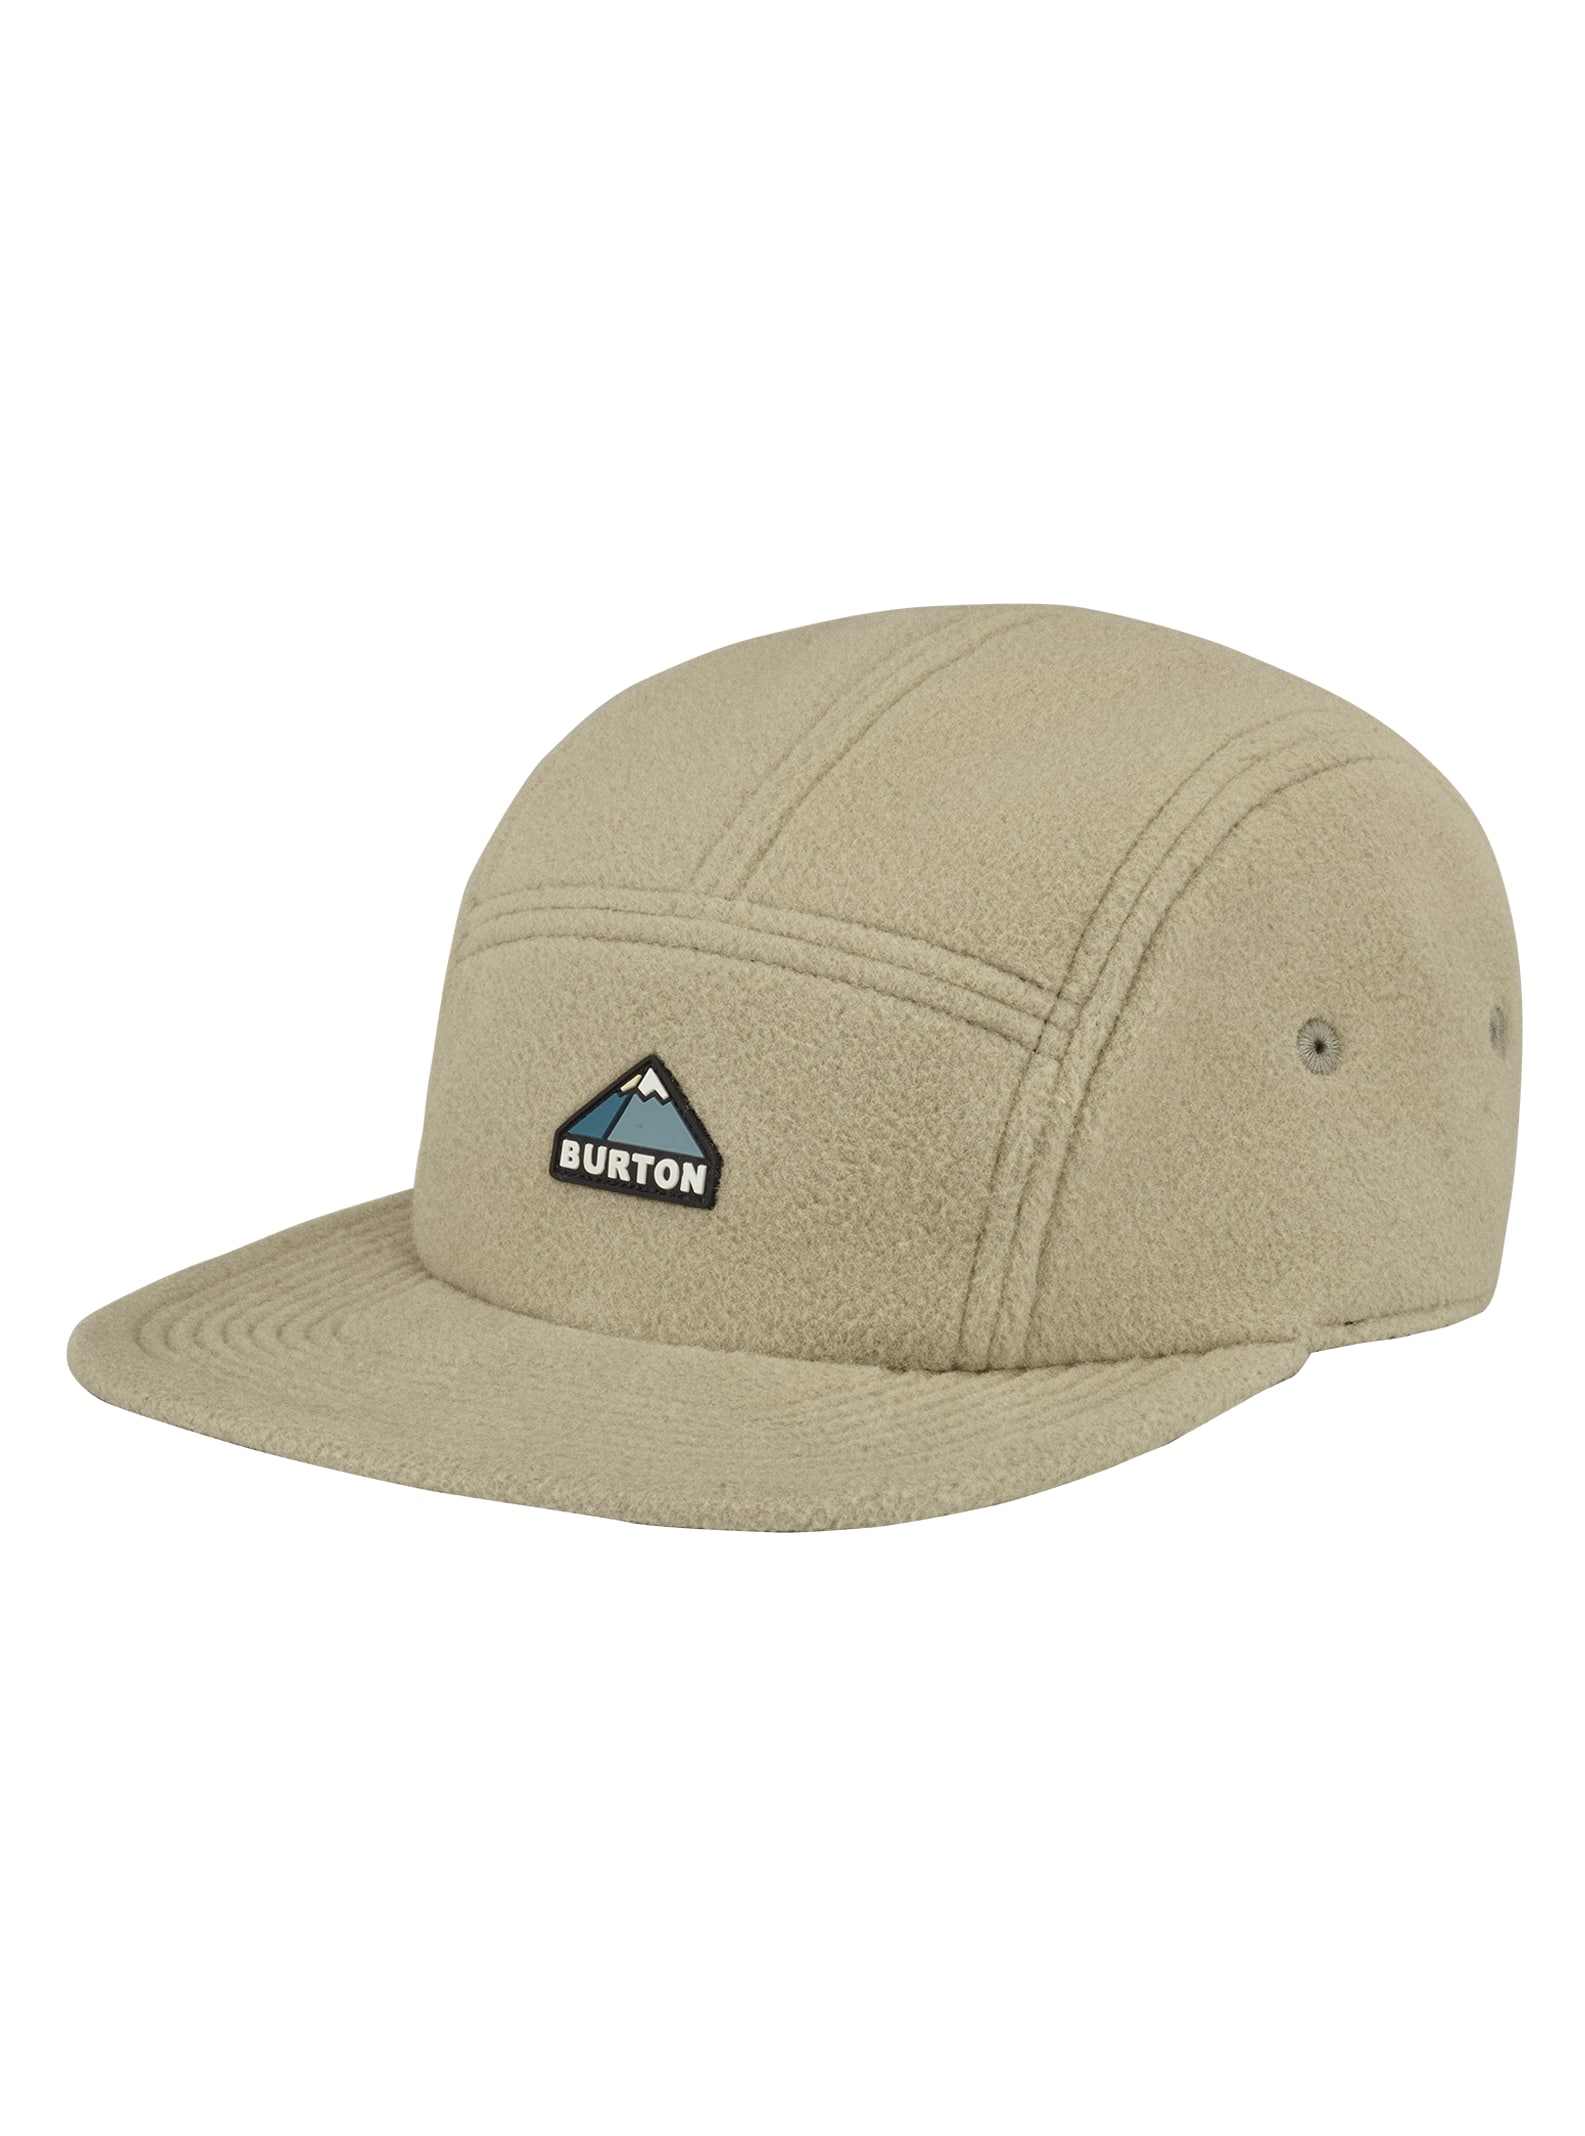 Burton Cordova Fleece Hat | Burton.com Fall 2019 JP